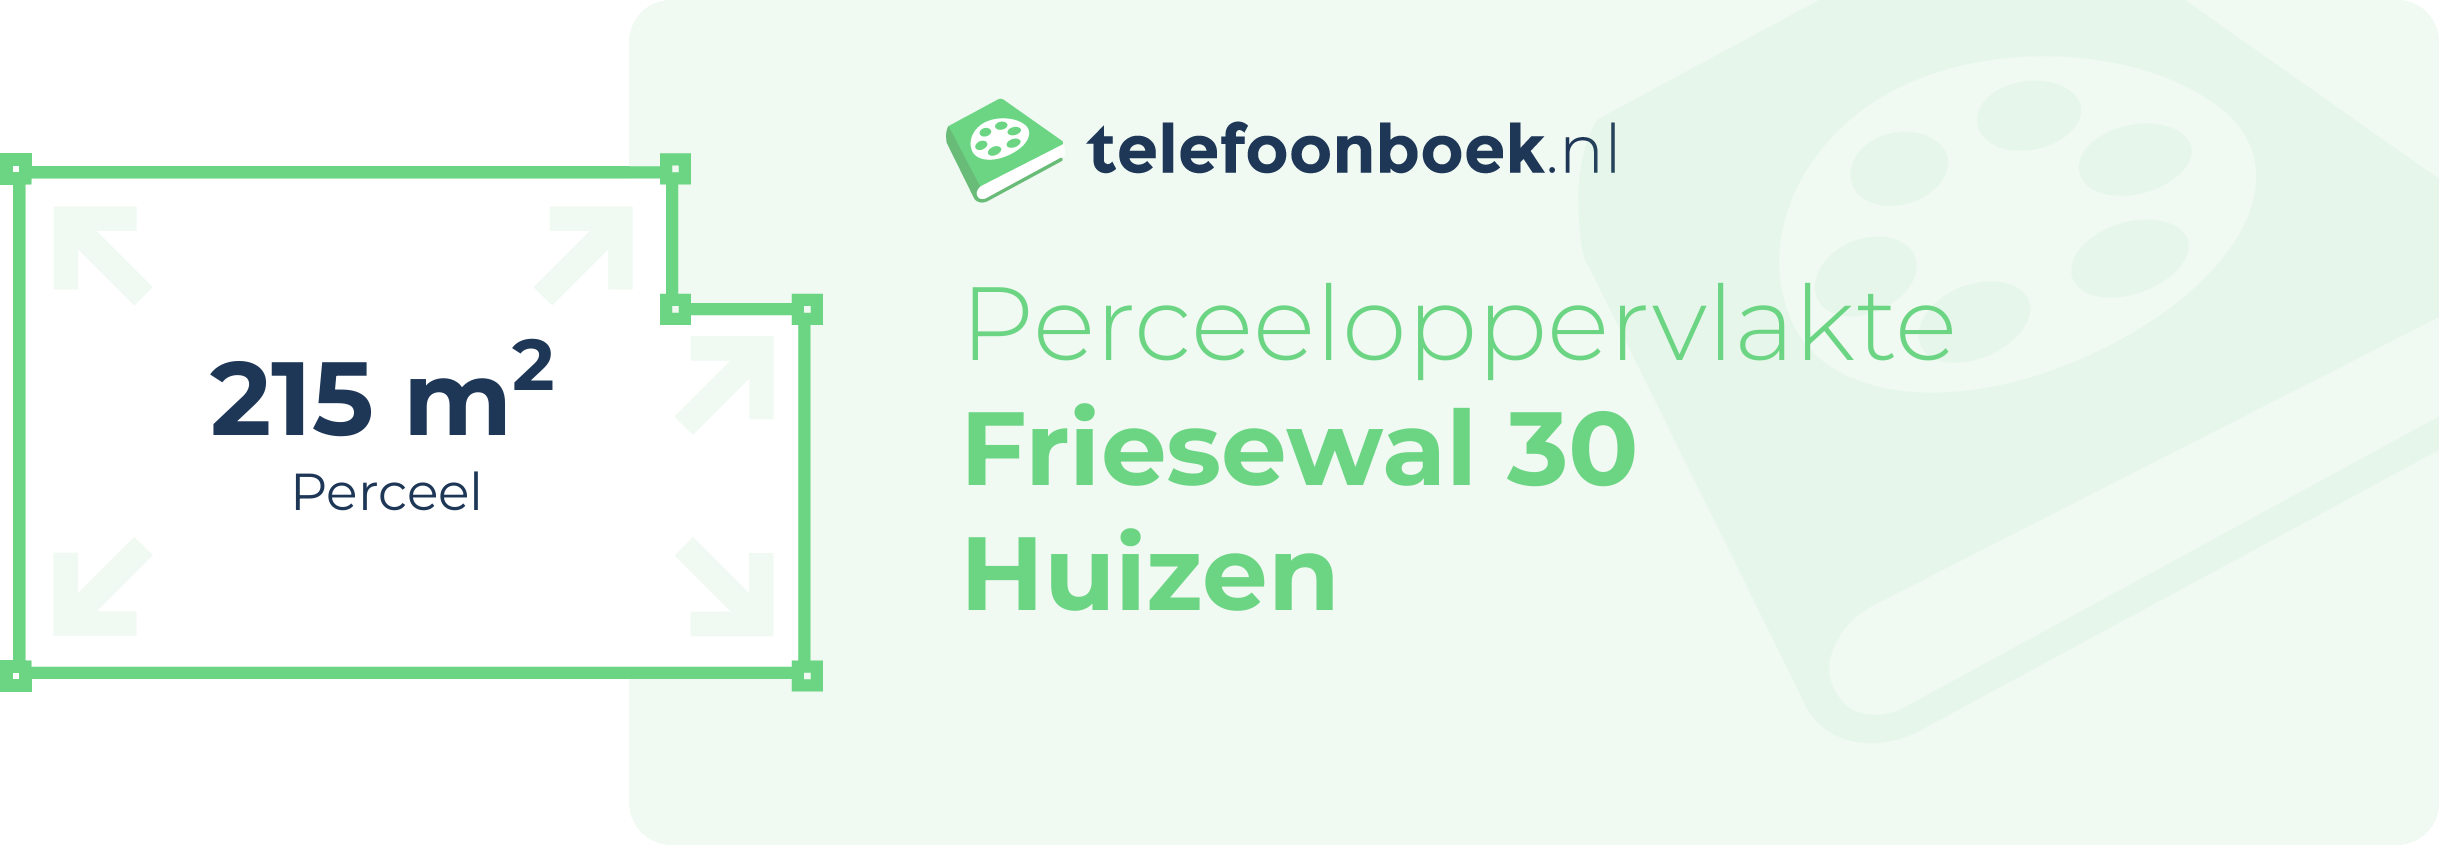 Perceeloppervlakte Friesewal 30 Huizen